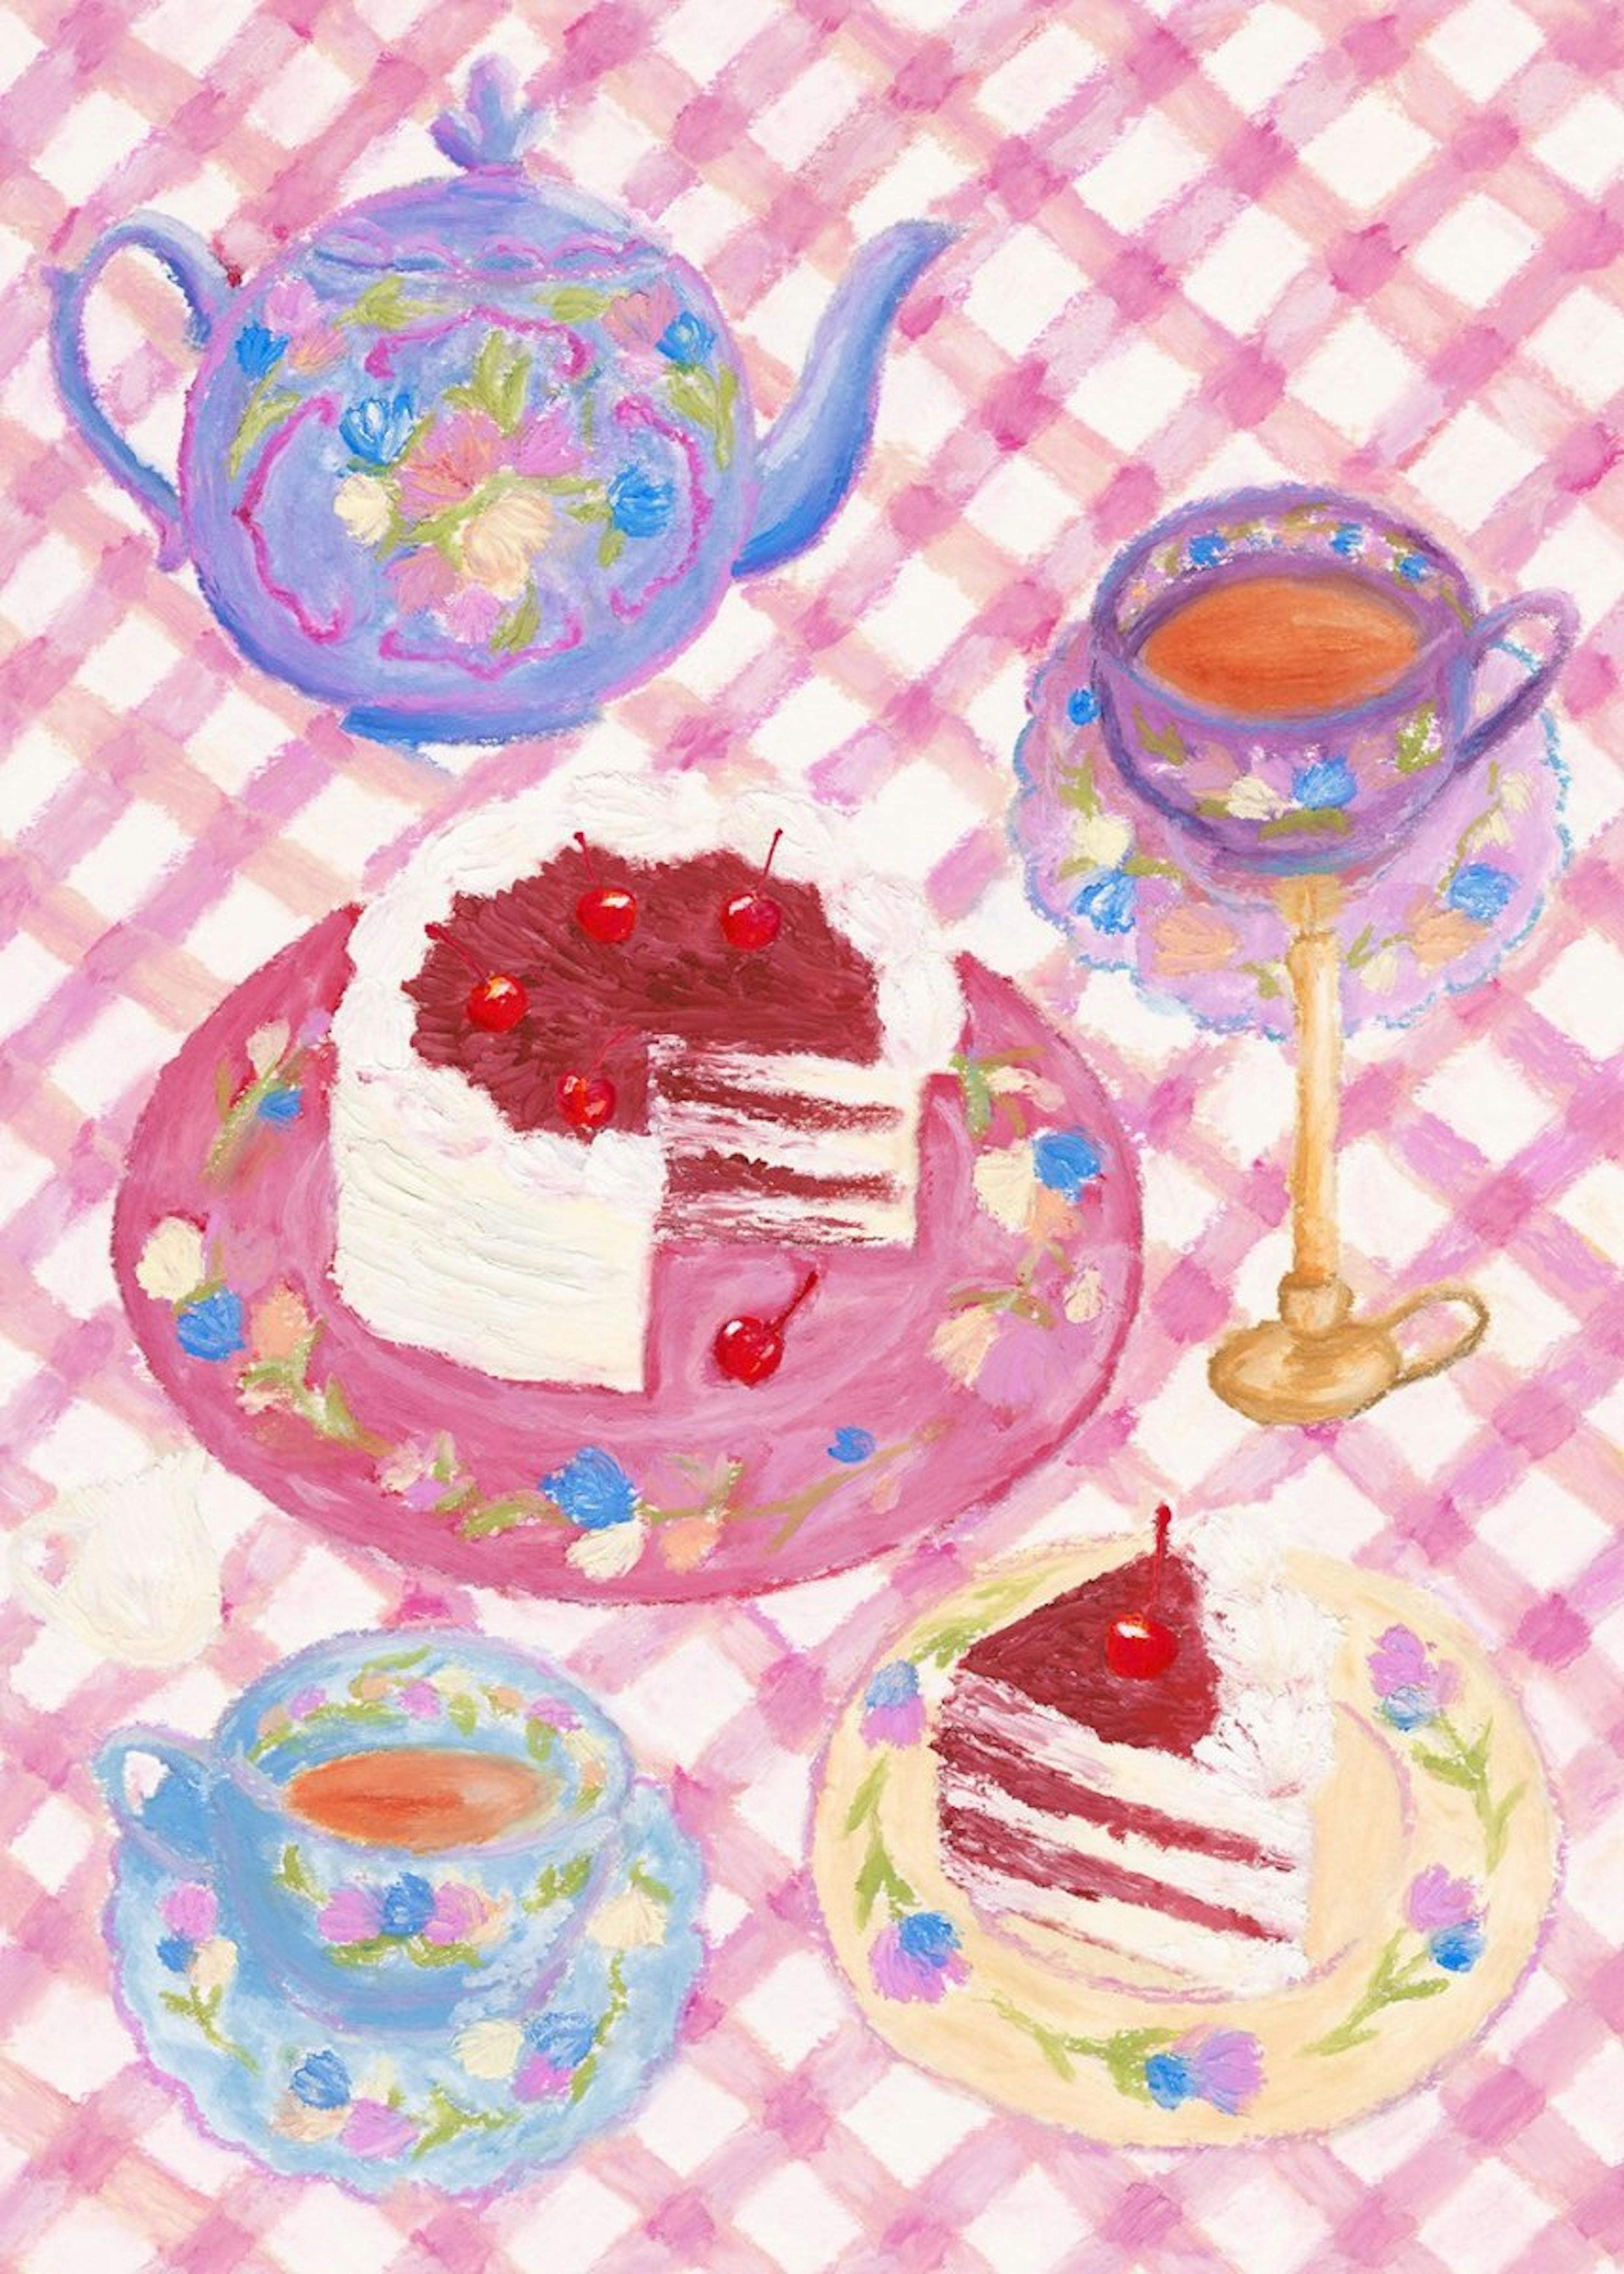 Cherry Red Velvet Cake Print 0